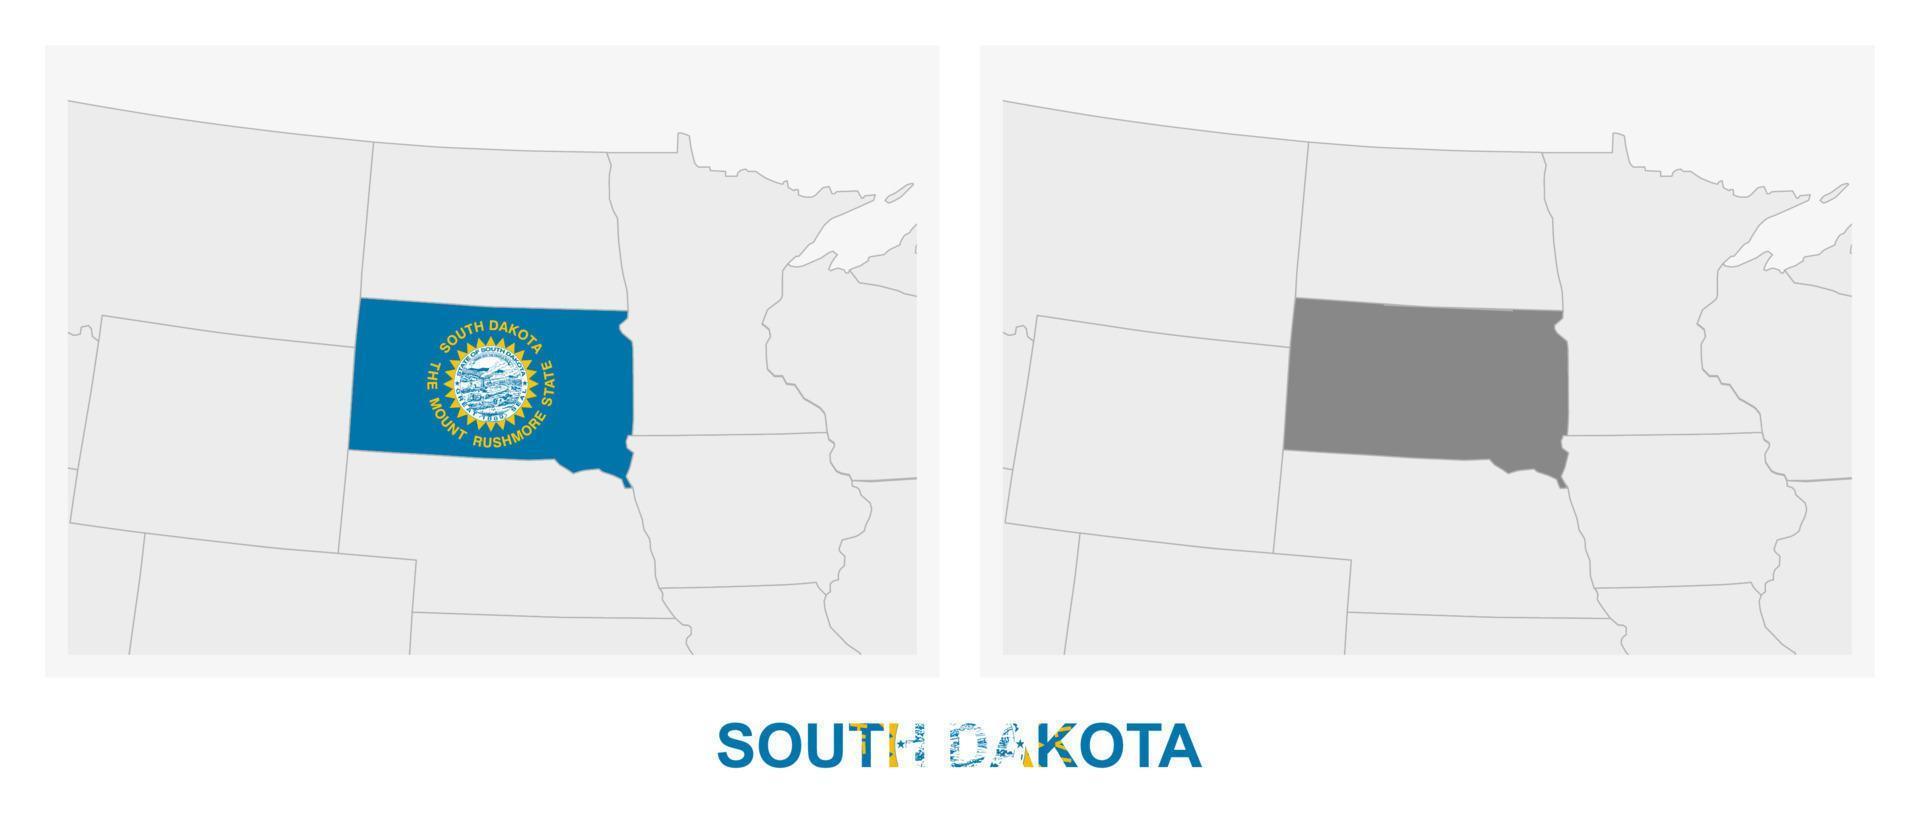 duas versões do mapa do estado americano dakota do sul, com a bandeira da dakota do sul e destacadas em cinza escuro. vetor